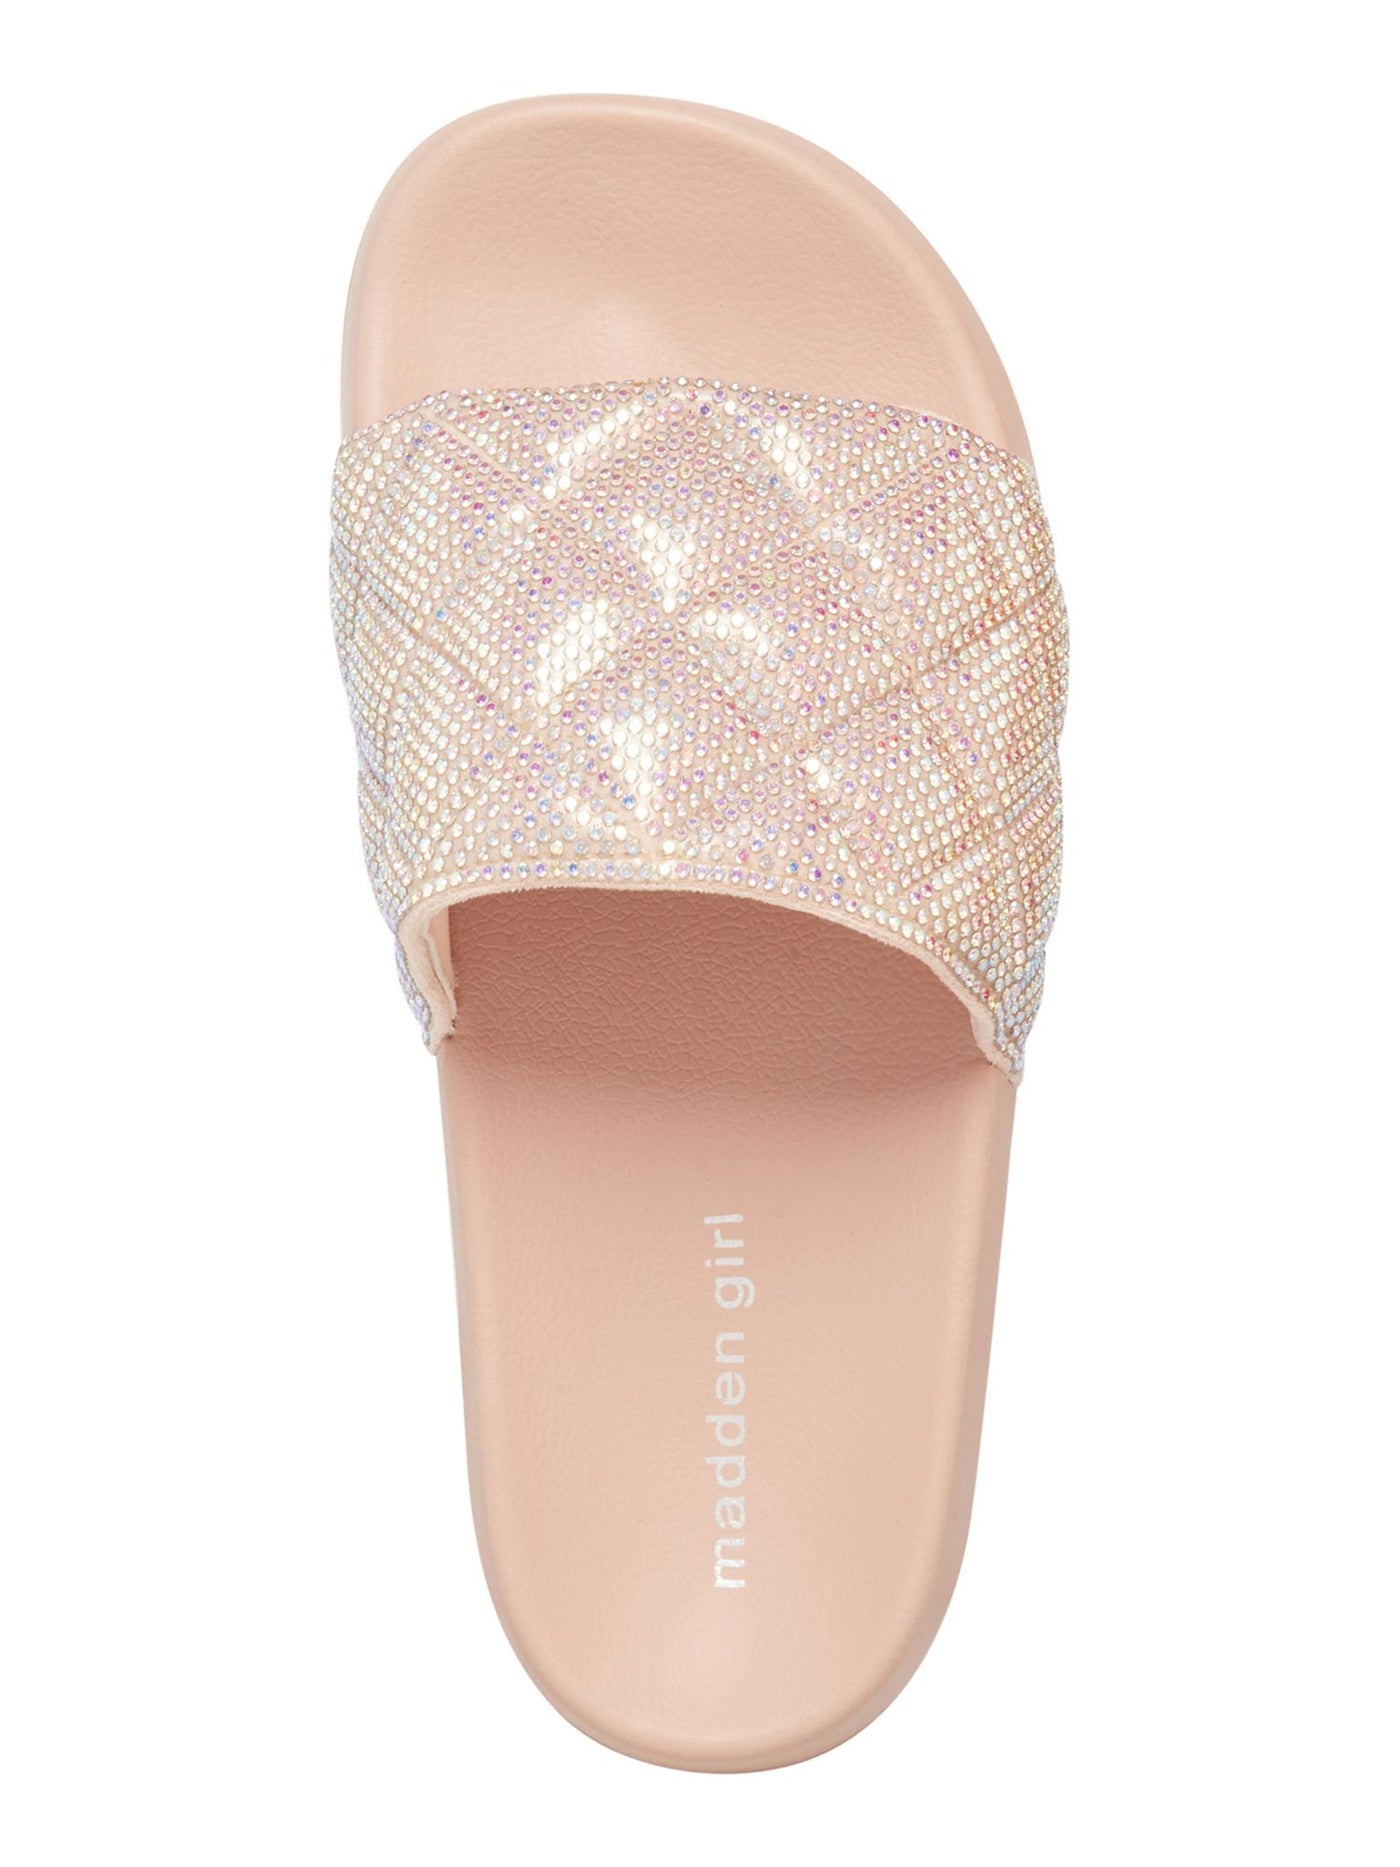 MADDEN GIRL Womens Pink Rhinestone Quilted Estie Round Toe Platform Slip On Slide Sandals Shoes 9 M